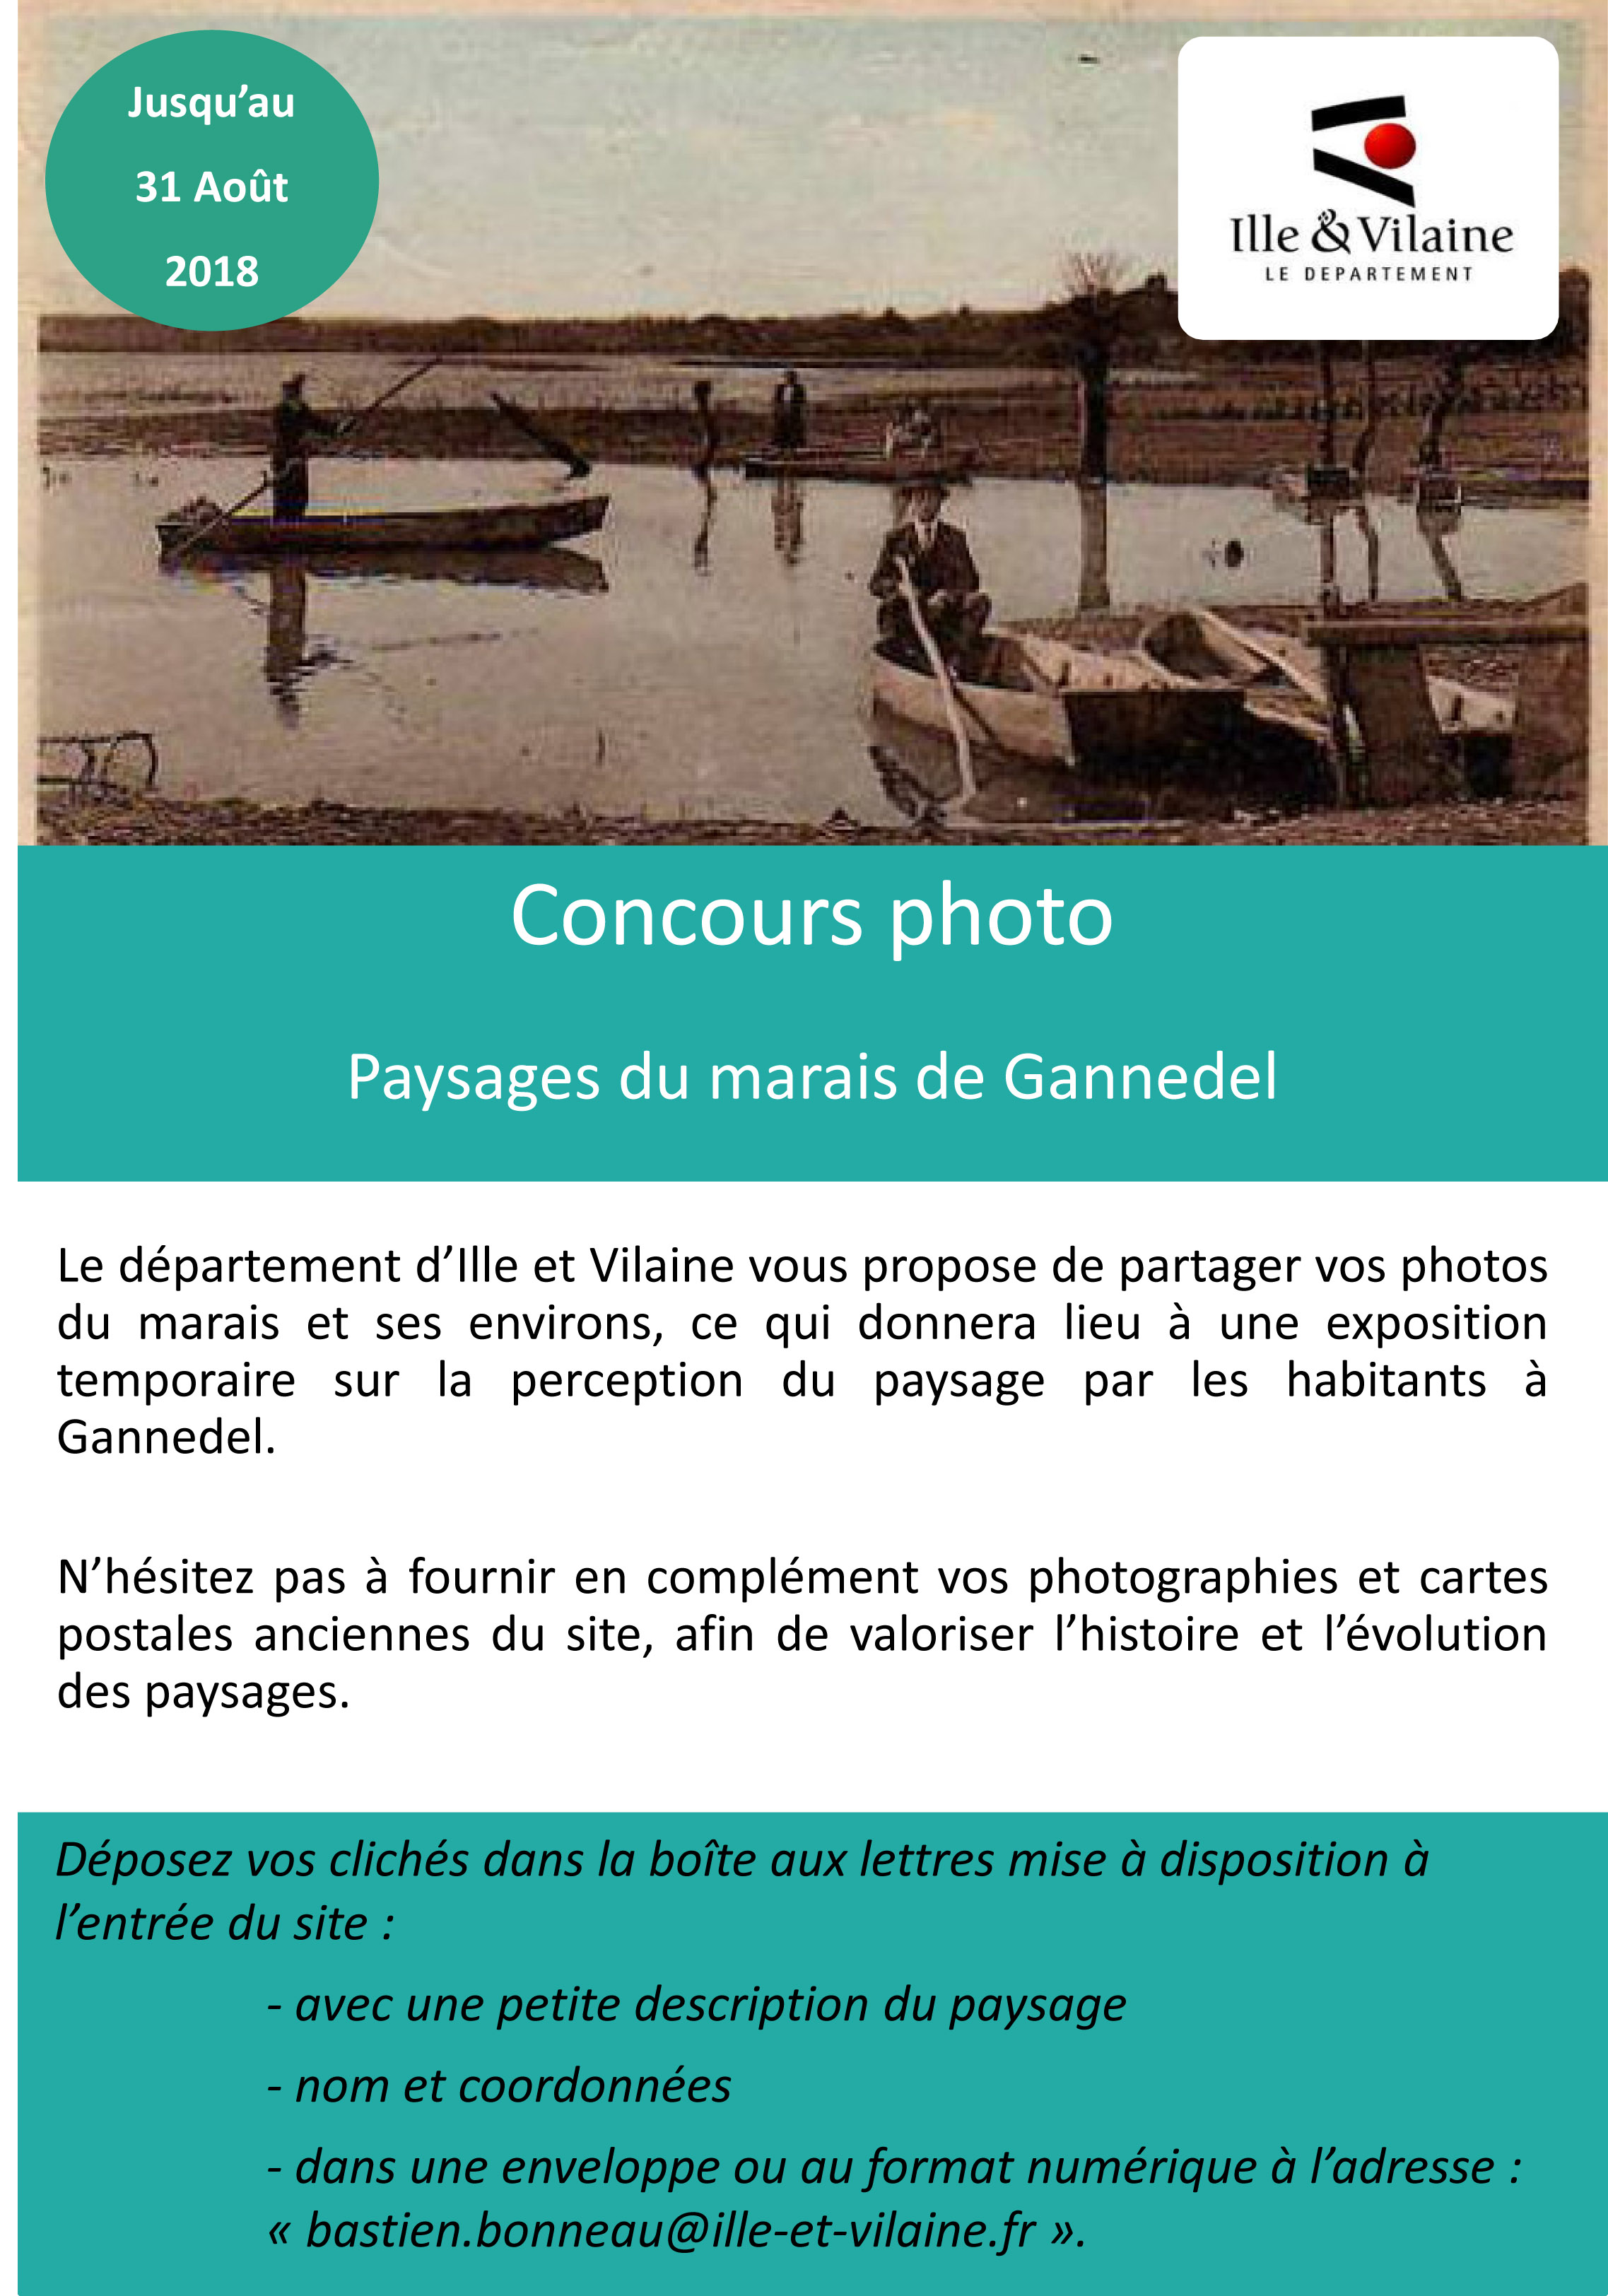 Concours photos sur le Marais de Gannedel ...